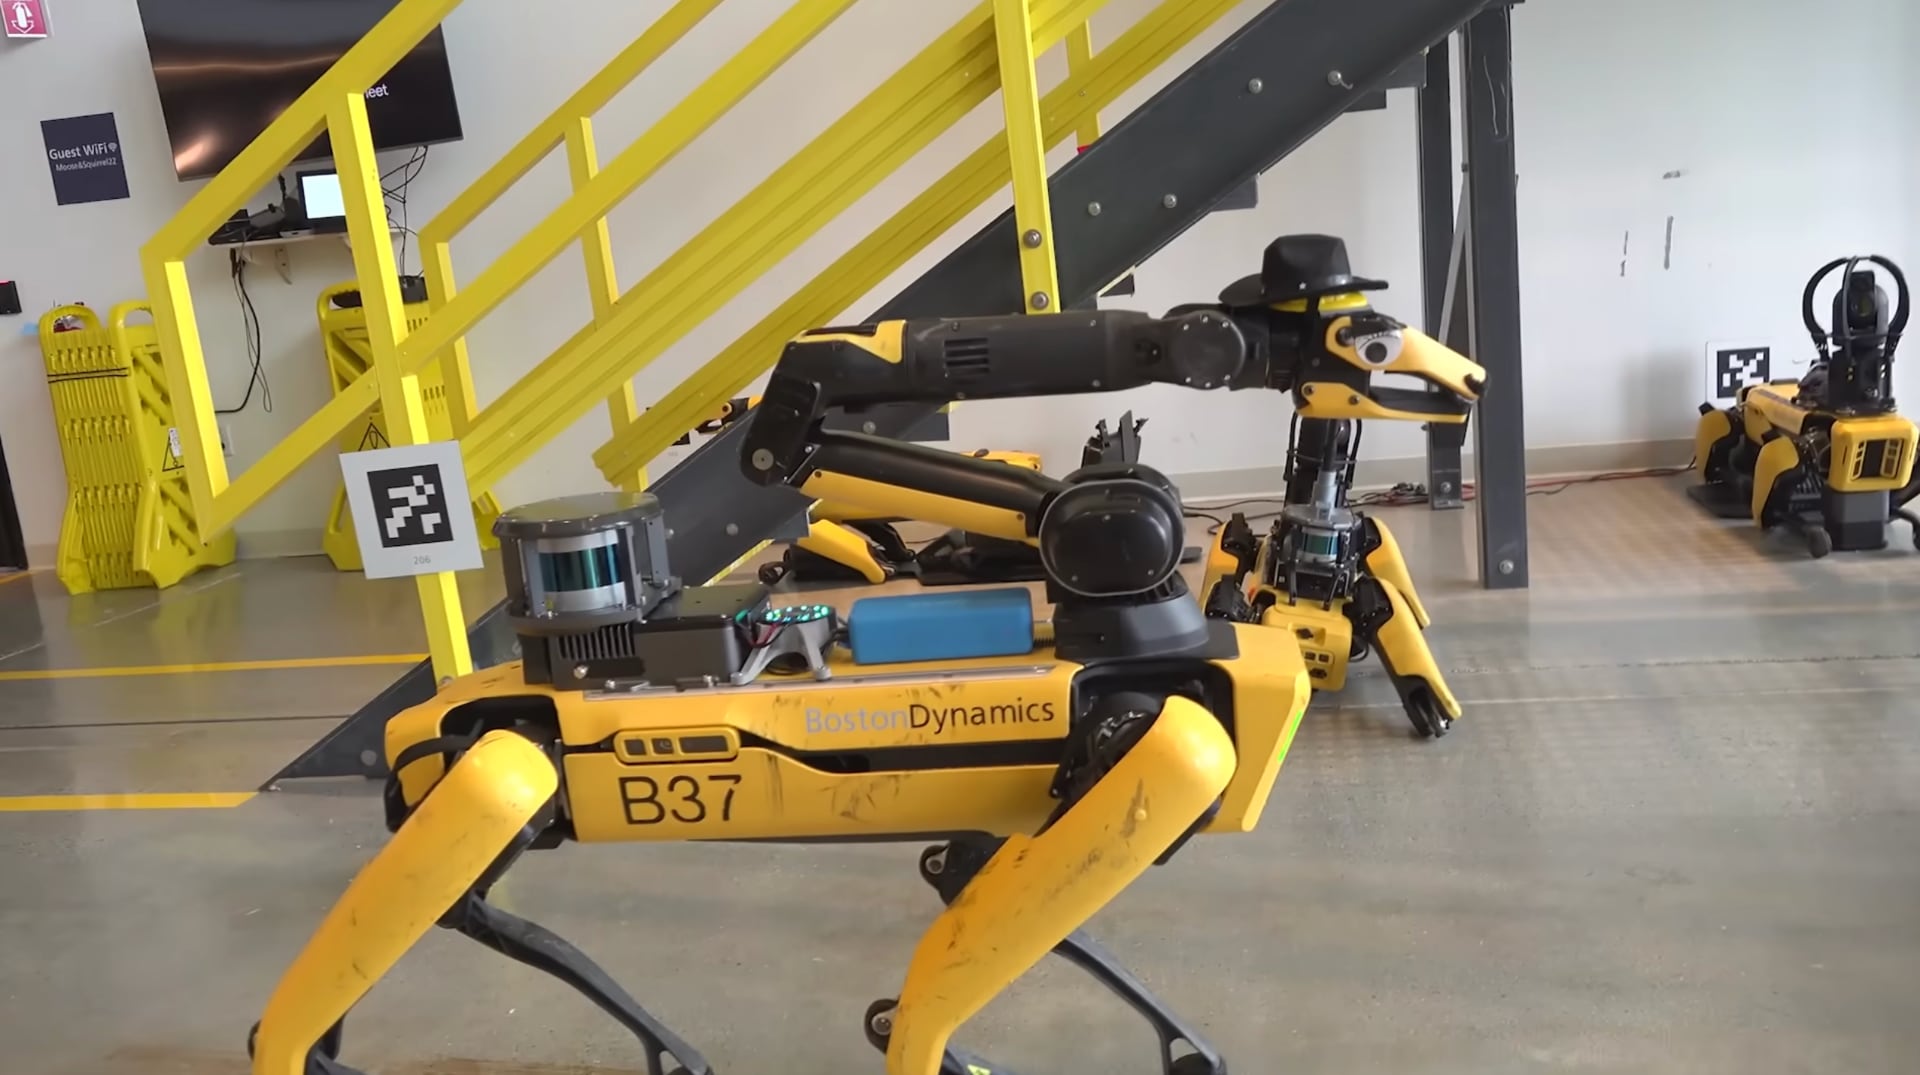 Boston Dynamics leert Spot-robot spreken (ja, met ChatGPT en andere AI-modellen) - video